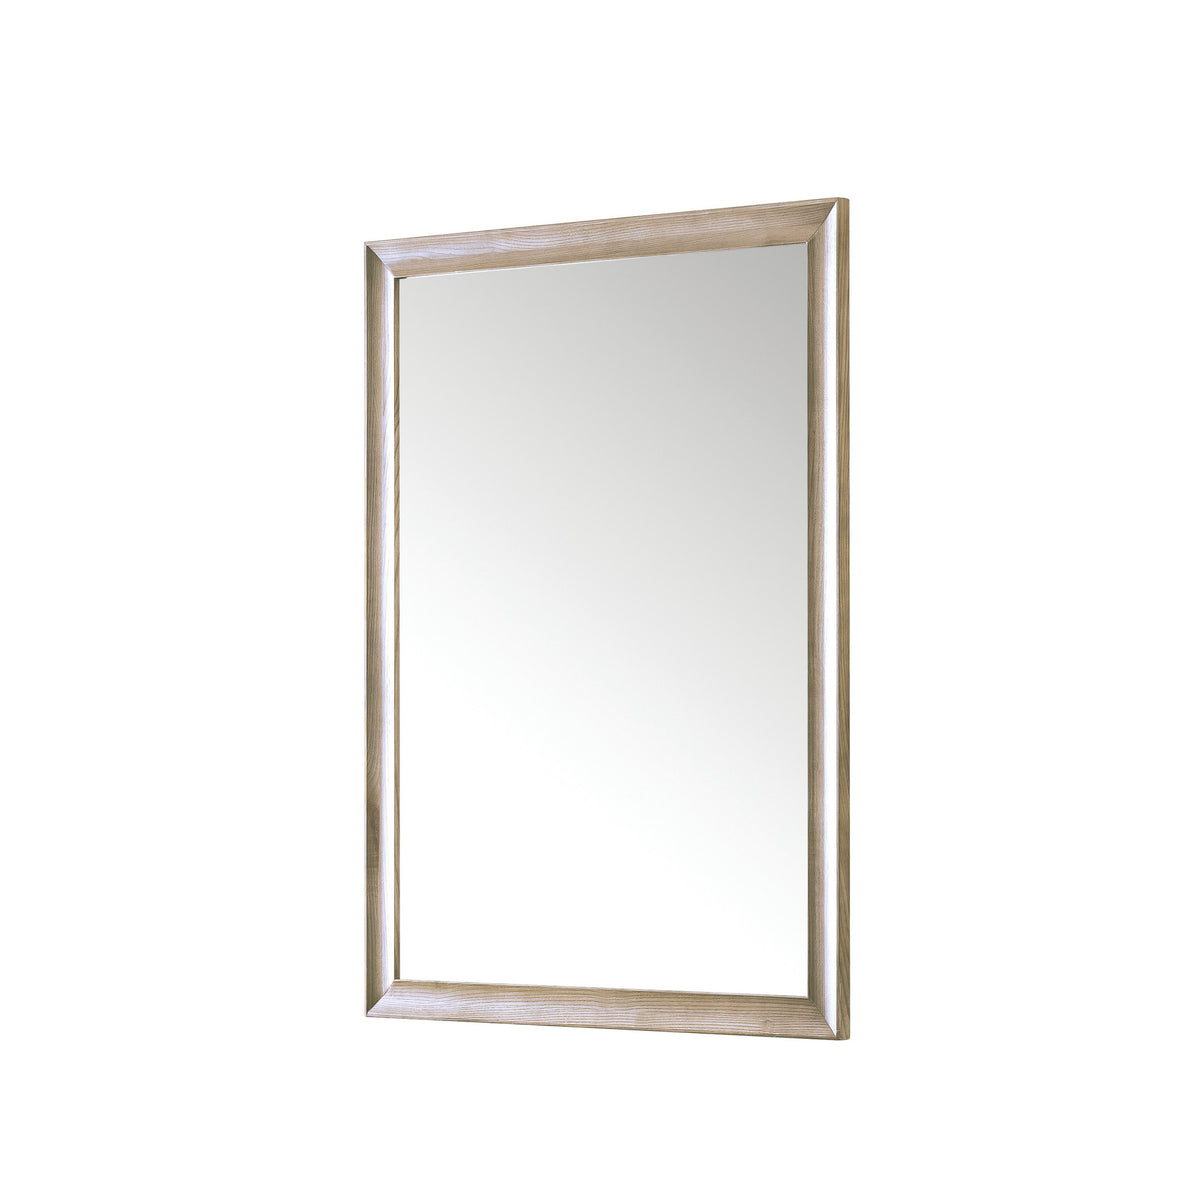 30" Glenbrooke Mirror, Whitewashed Oak